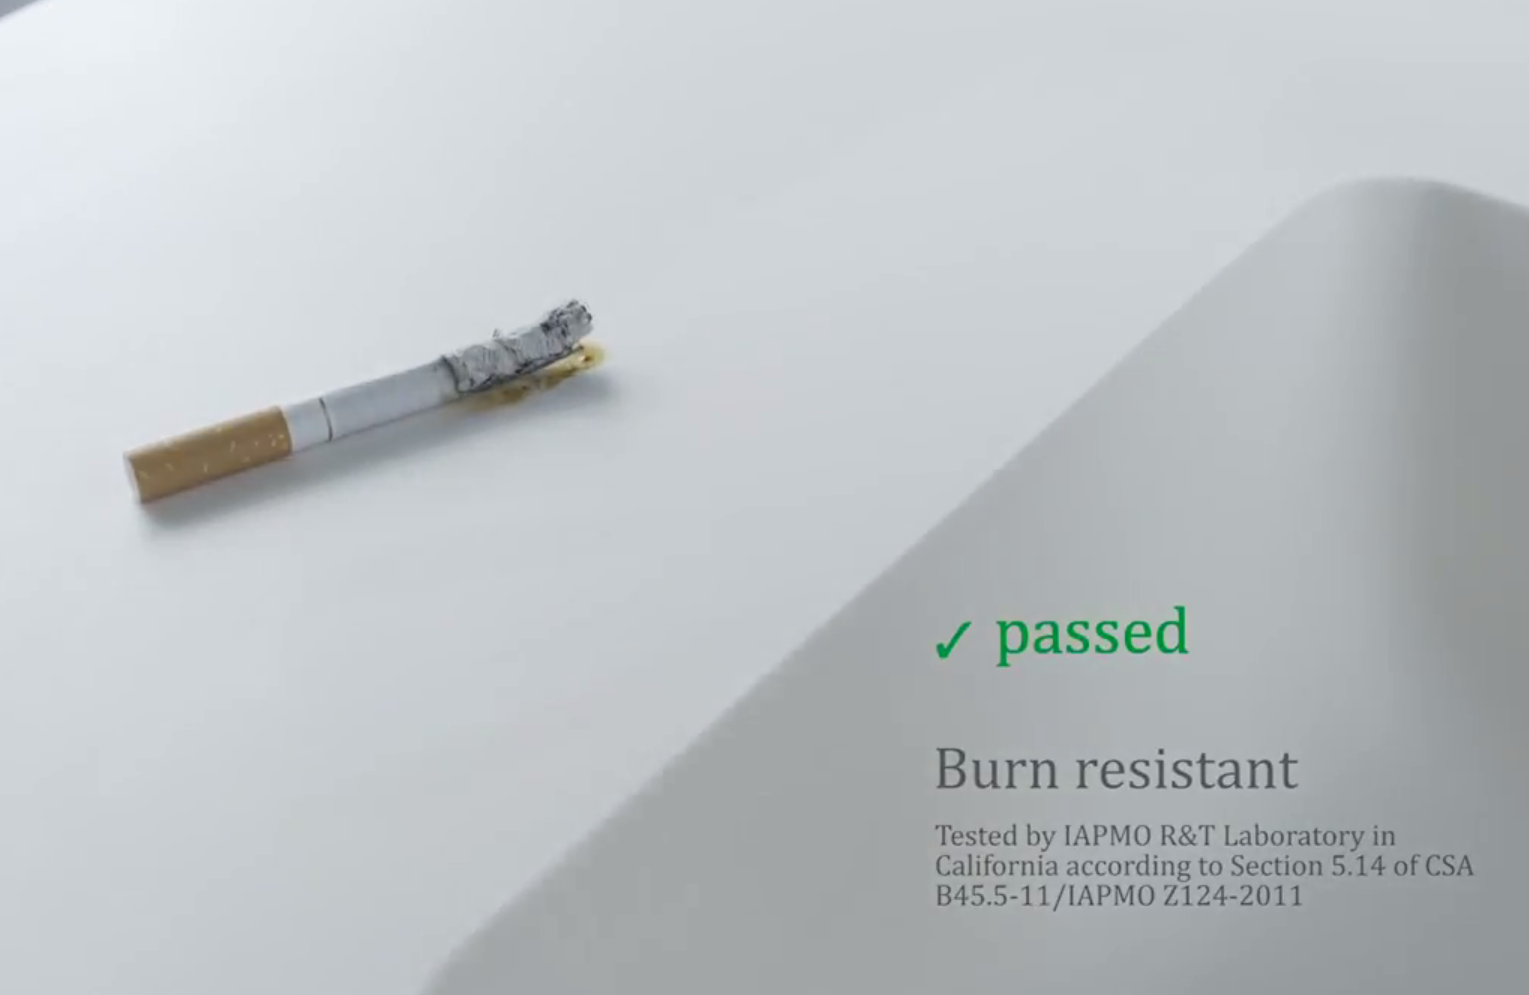 burn resistant